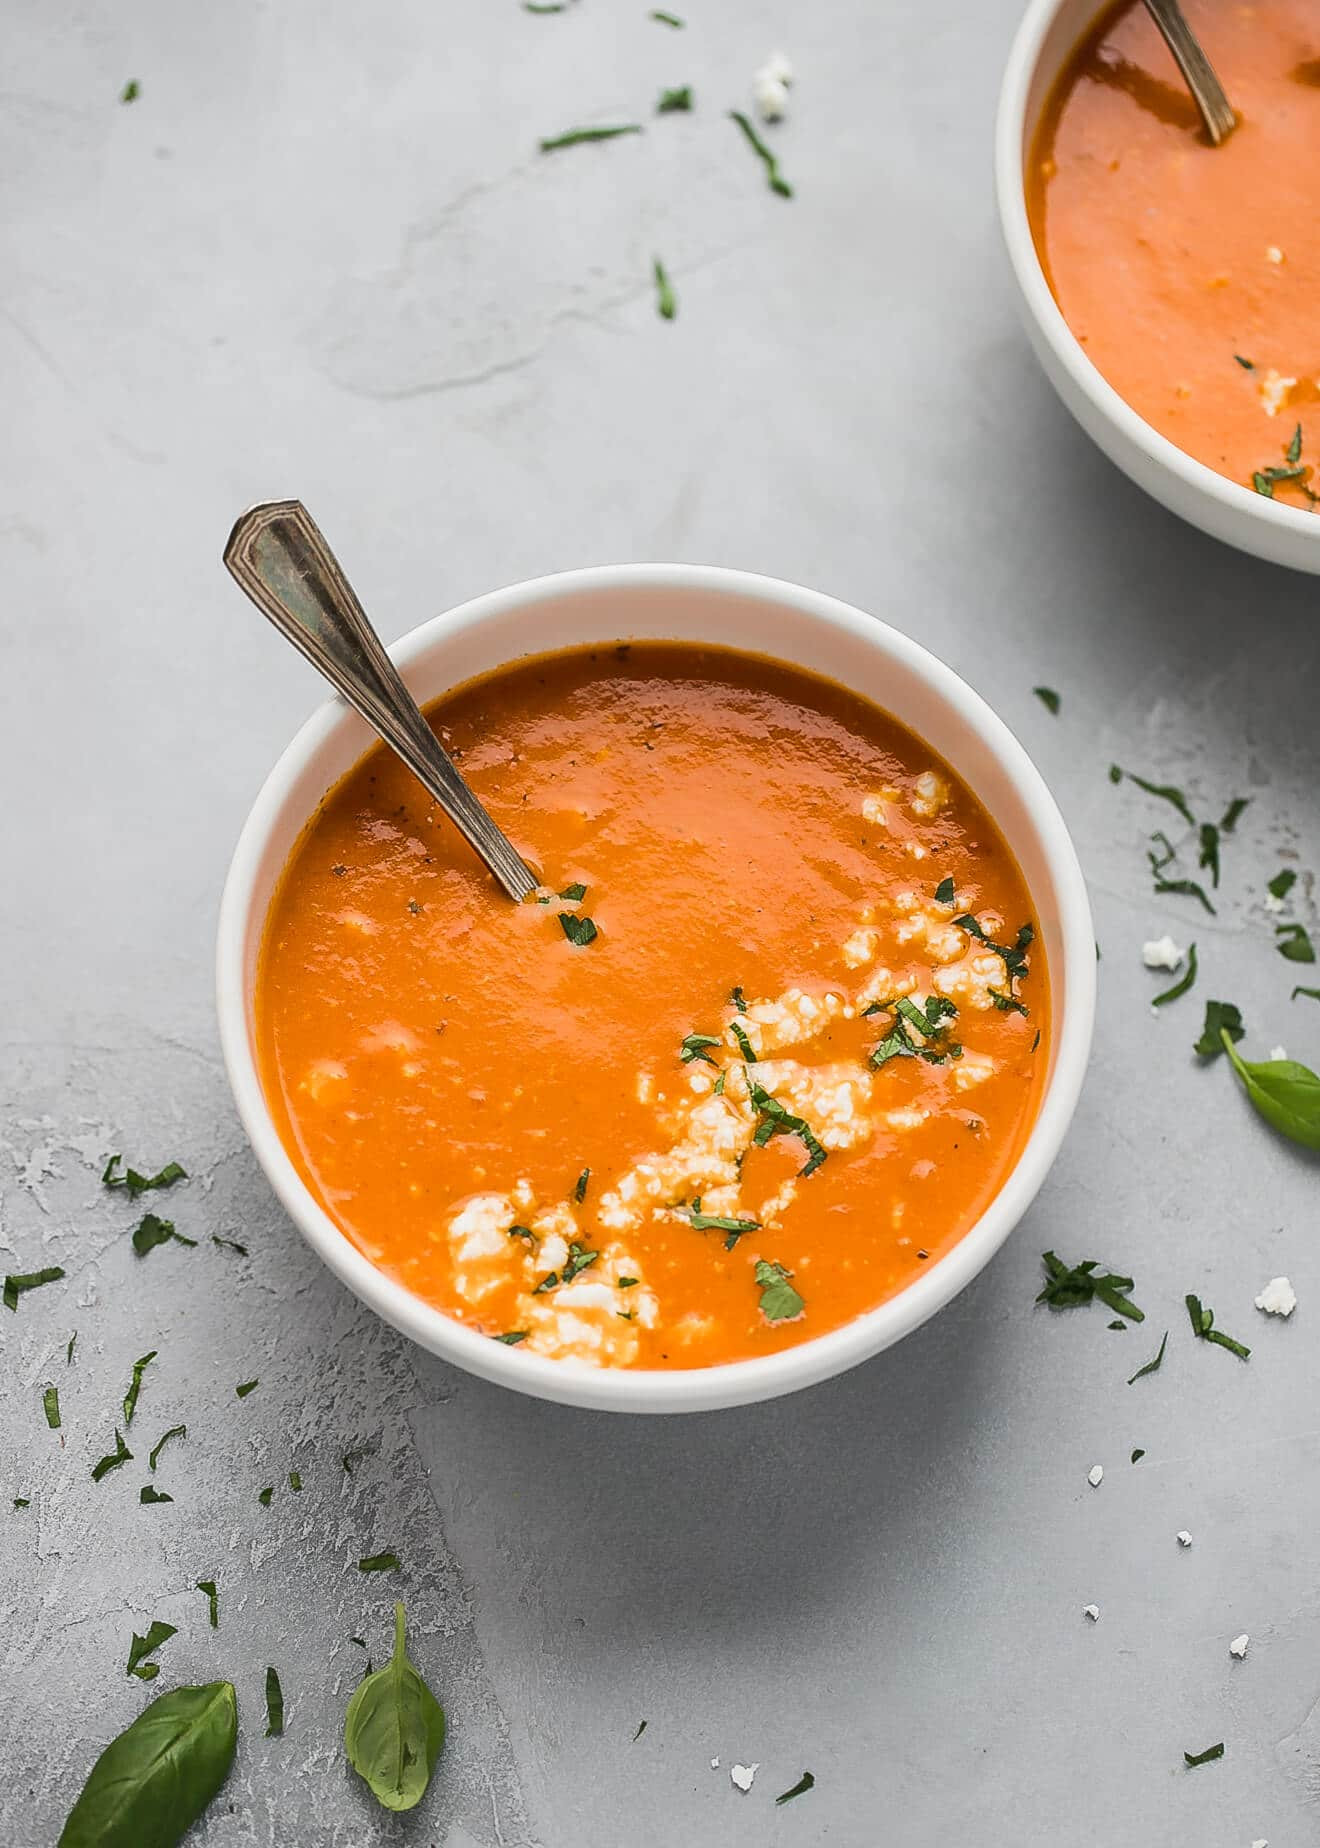 Low Calorie soup Recipes Unique Easy tomato Feta soup Recipe Low Calorie Low Carb Keto